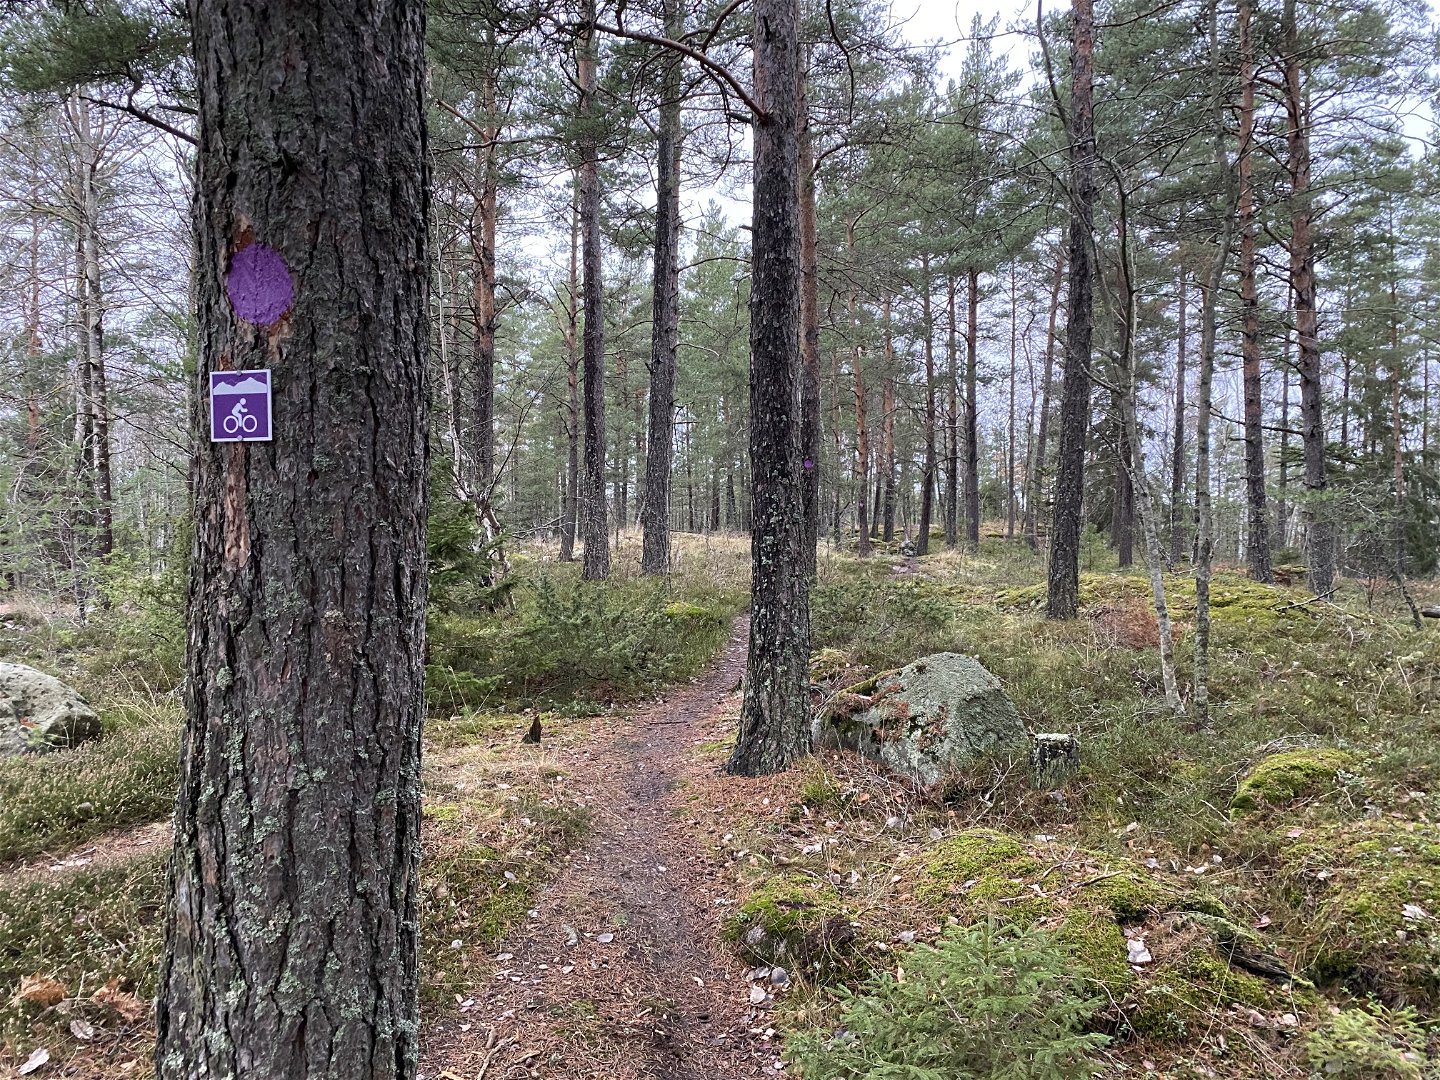 Terrängcykelleden går i blandad terräng på norra Lovö. Foto: Mats Larshagen.